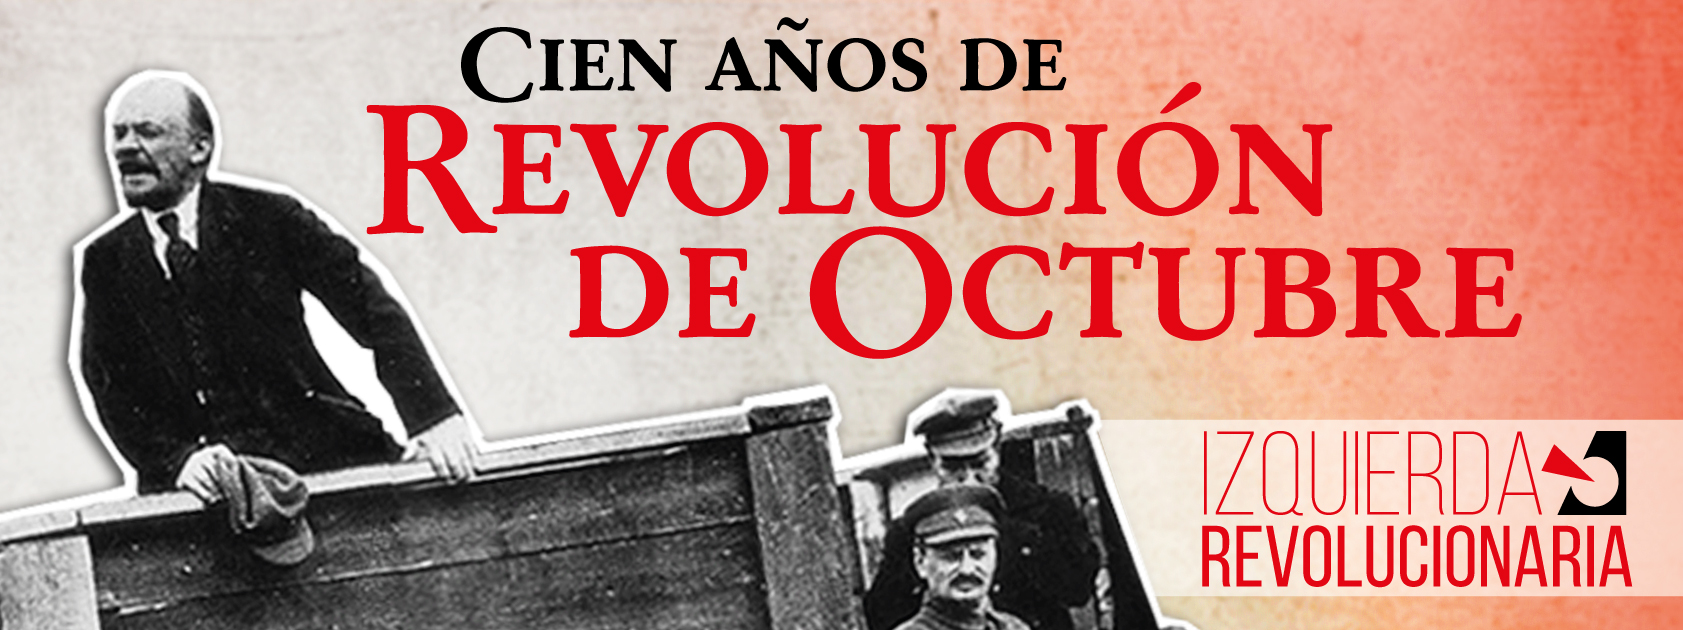 Cien años de Revolución de Octubre